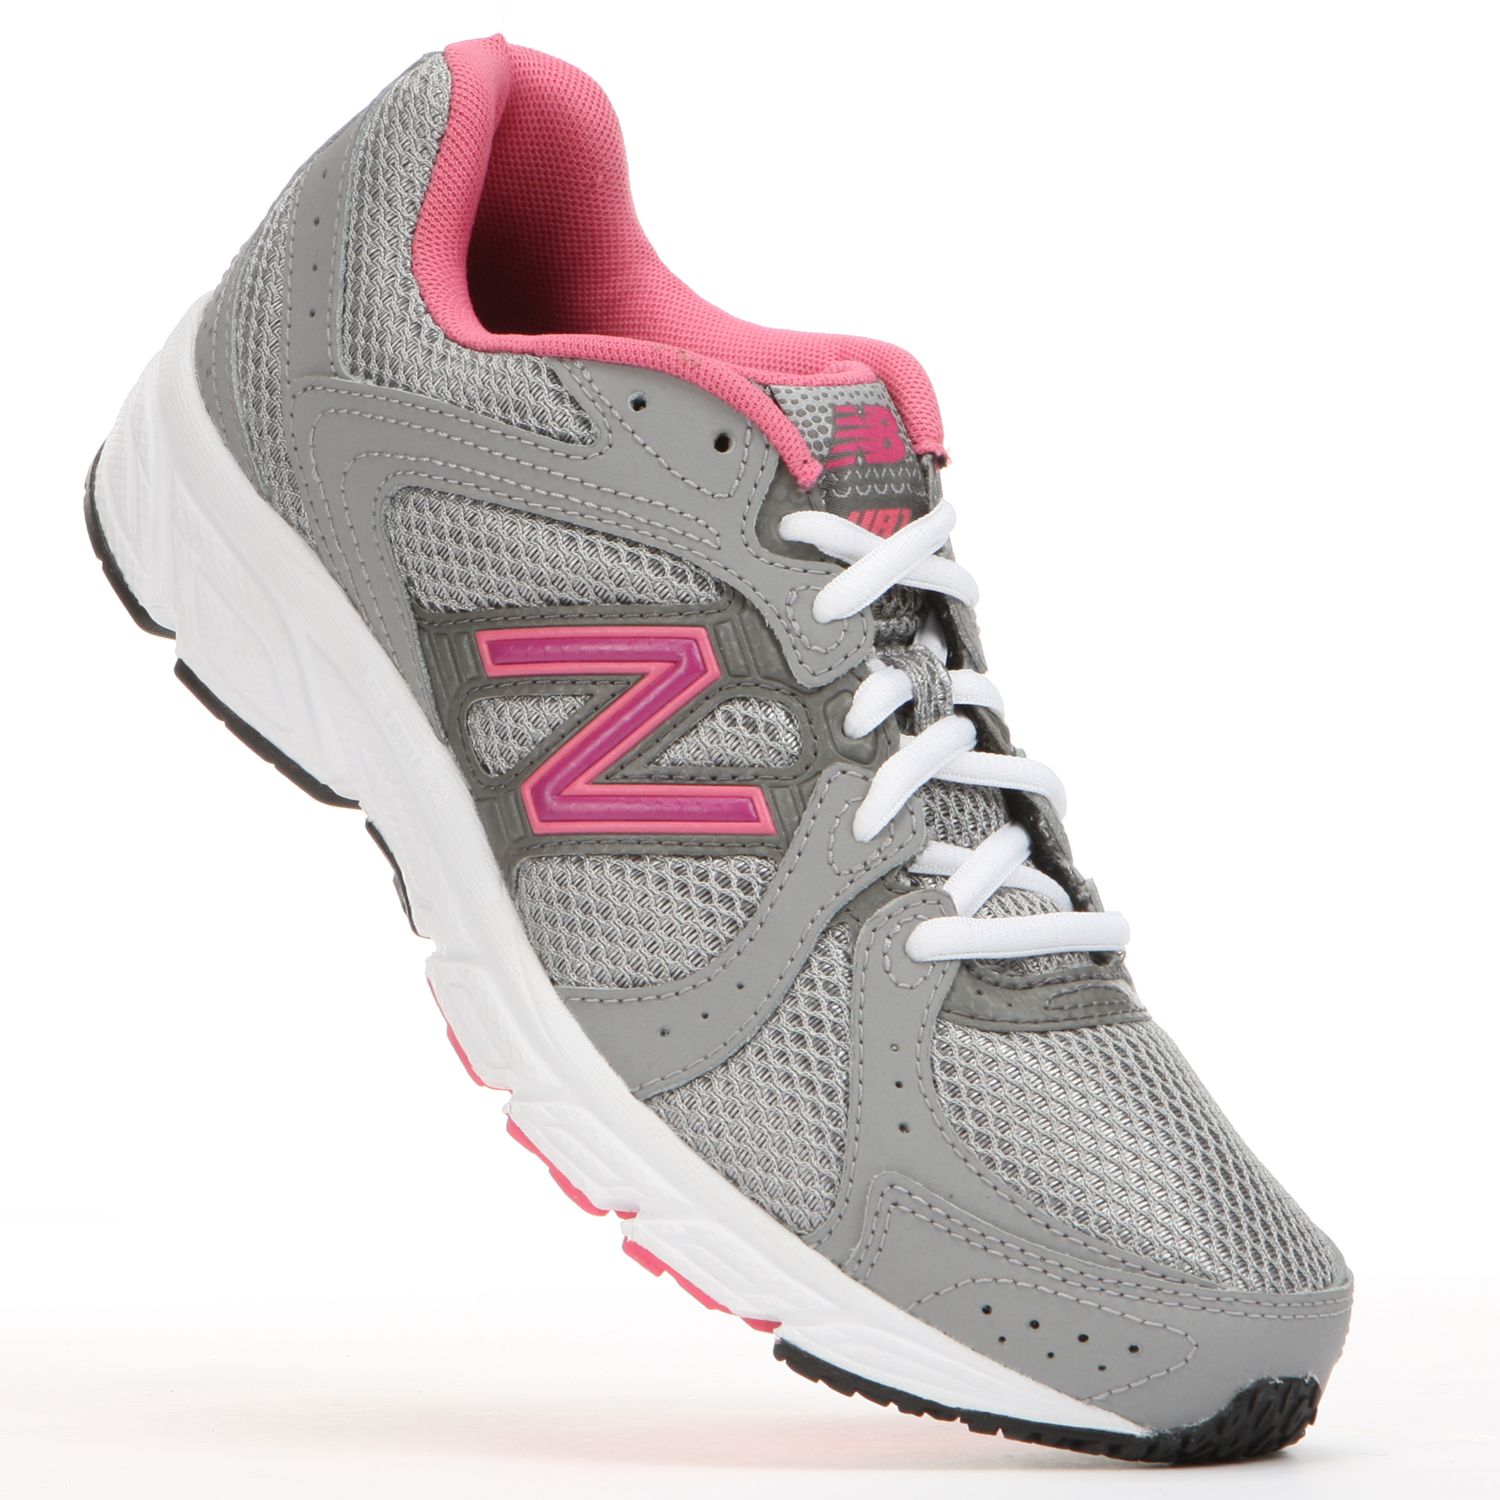 New Balance 481 Running Shoes - Women